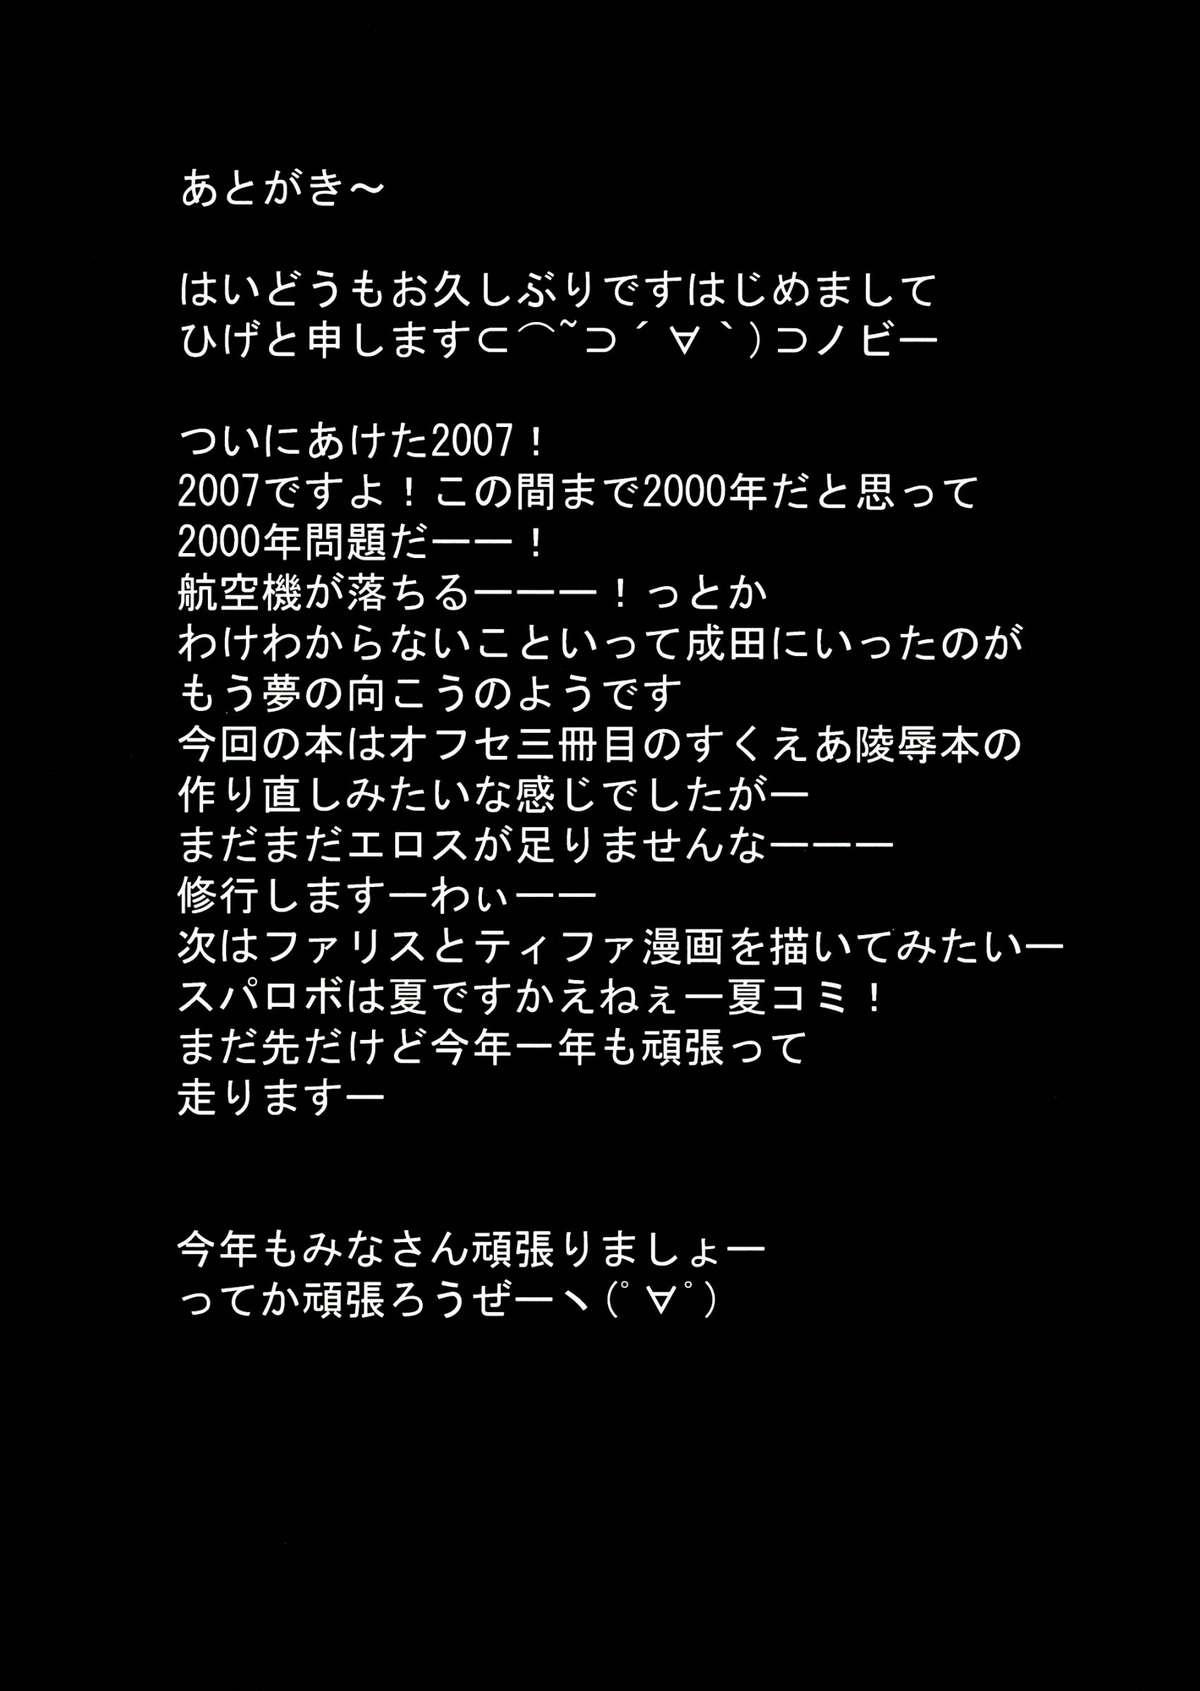 Jeune Mec Square Enix Revenge - Seiken densetsu 3 Dragon quest Liveshow - Page 25